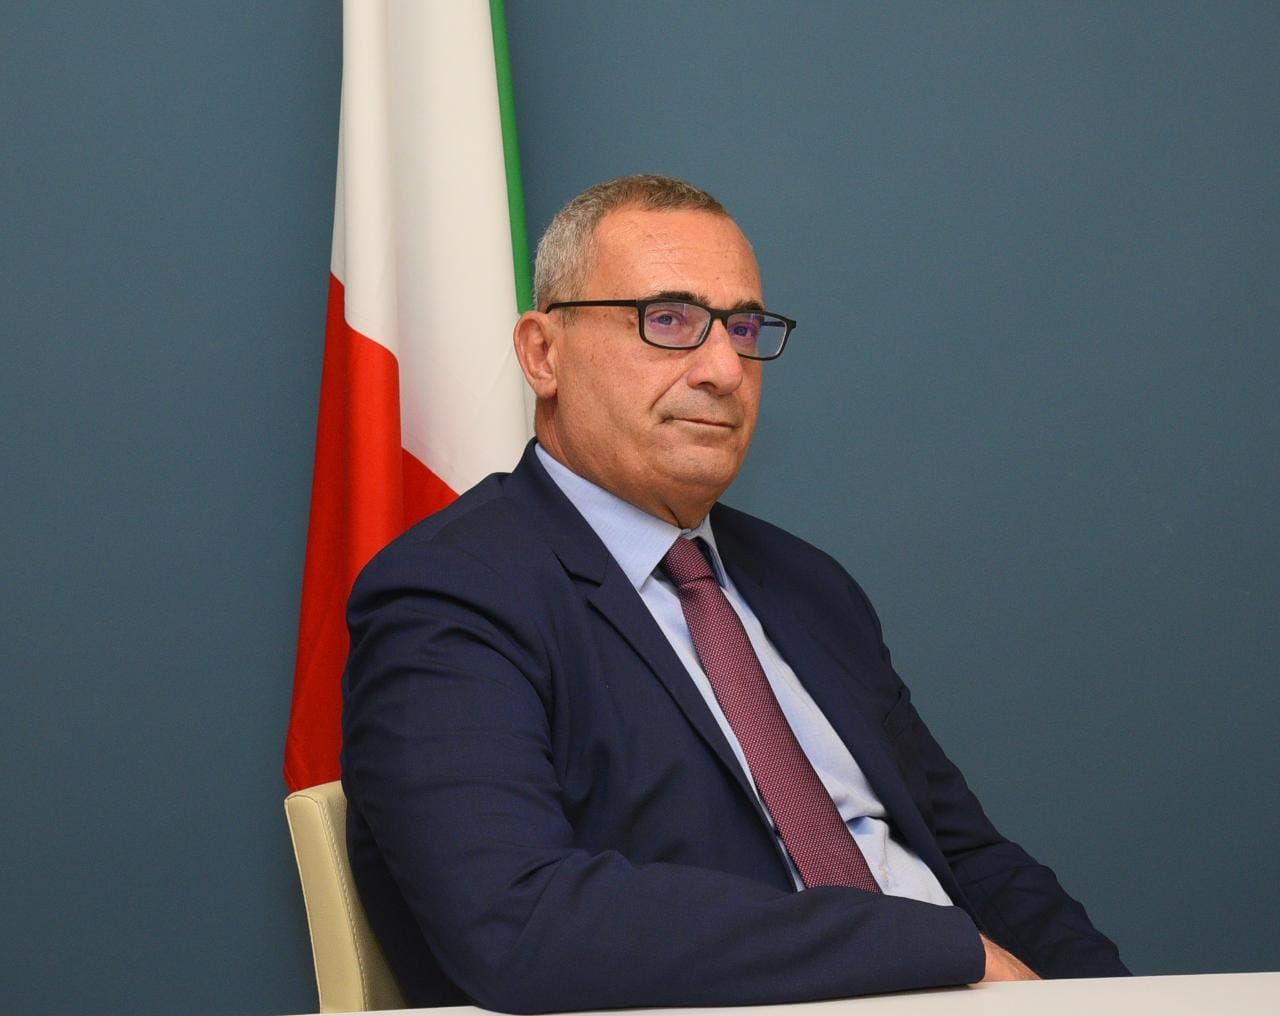 Бизнес-делегация представителей регионов Италии посетит Азербайджан - директор ИТА (Интервью)